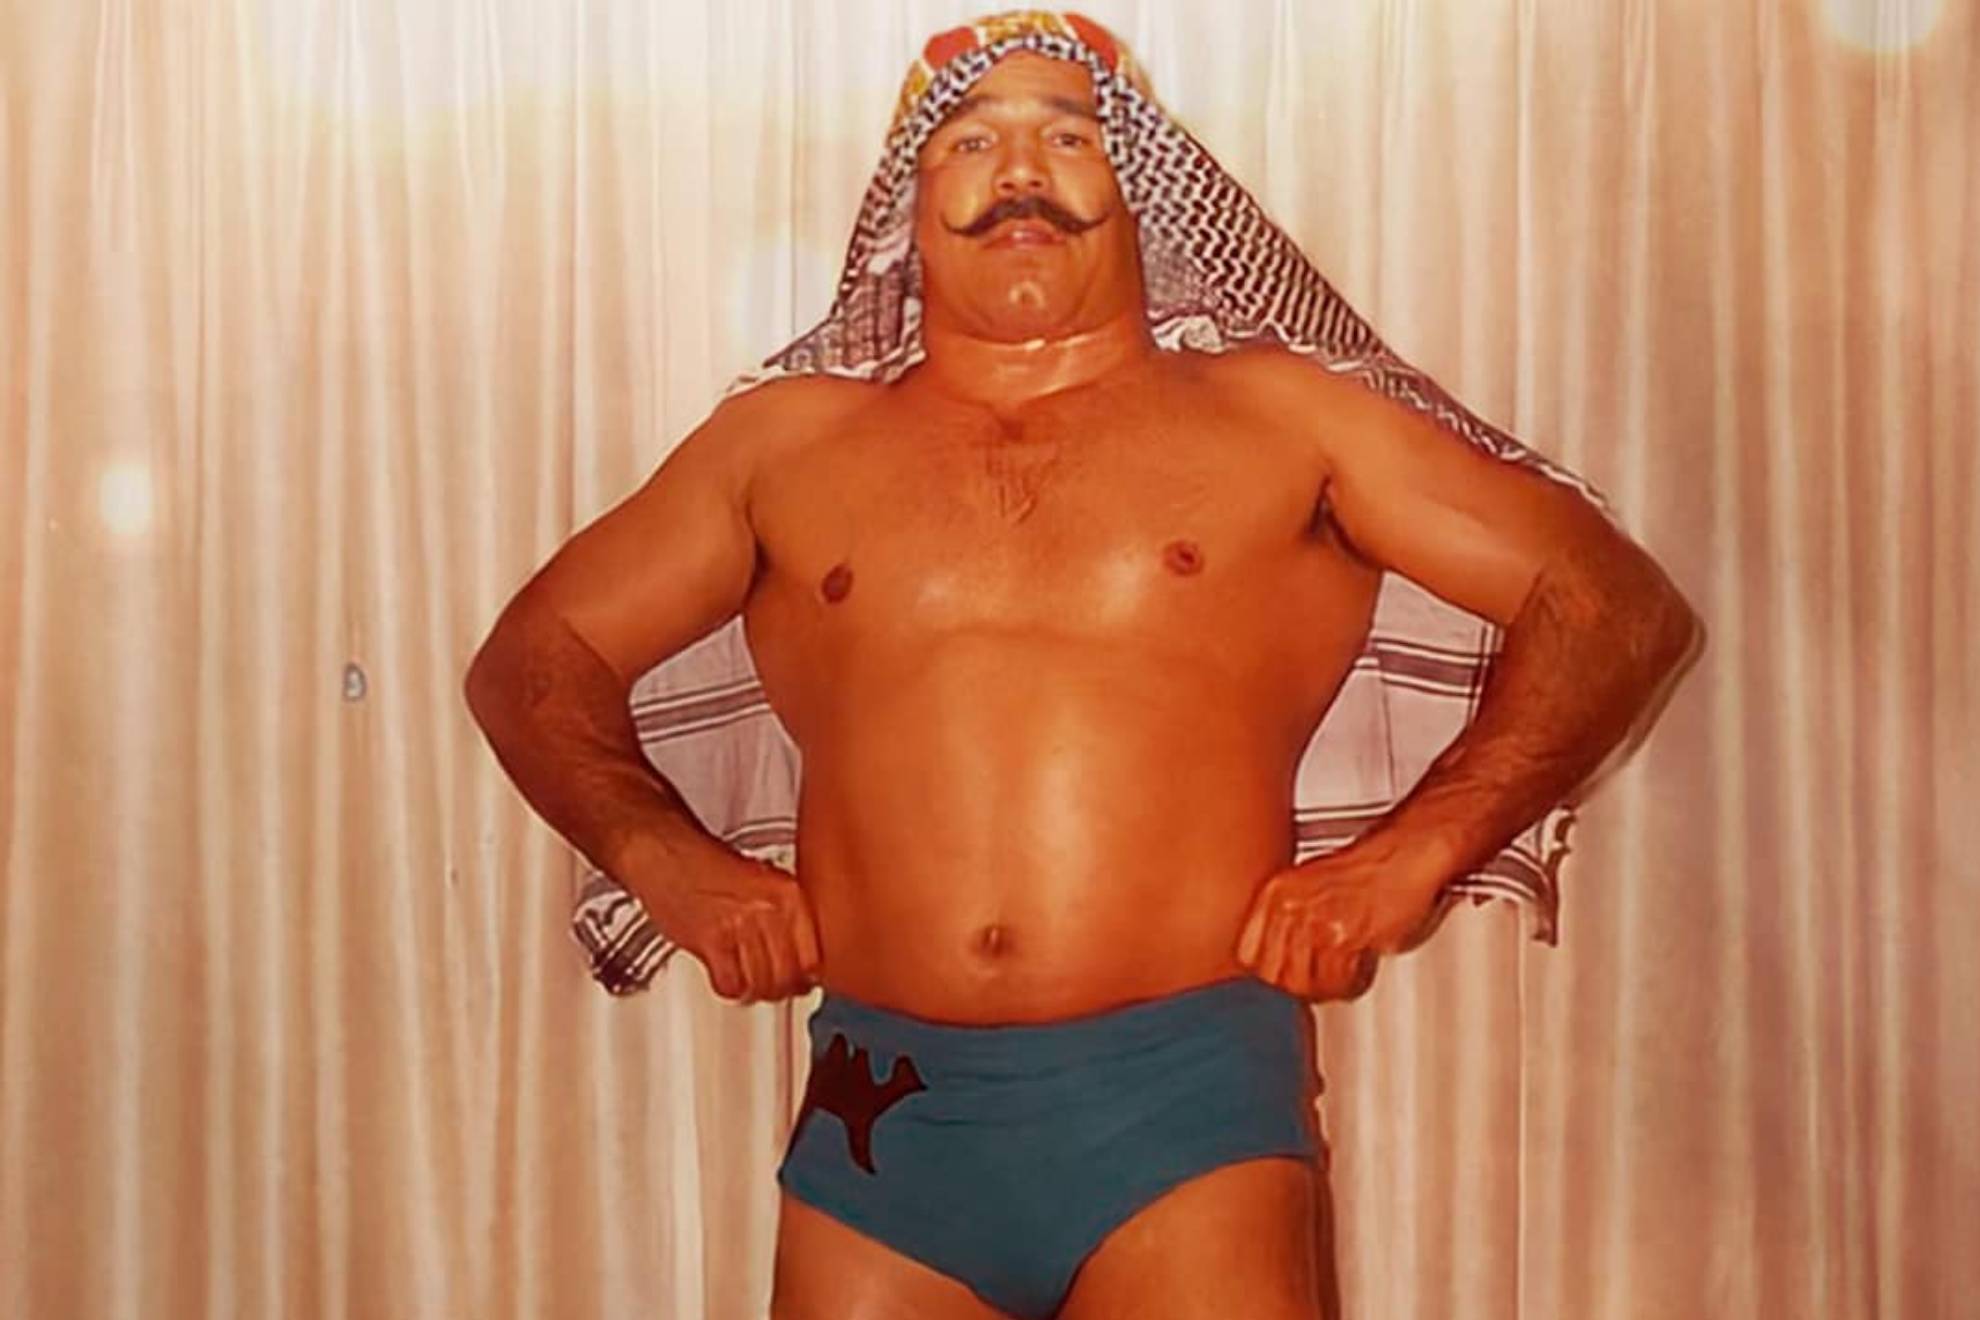 The Iron Sheik es una leyenda de la WWE y de la lucha libre en el mundo